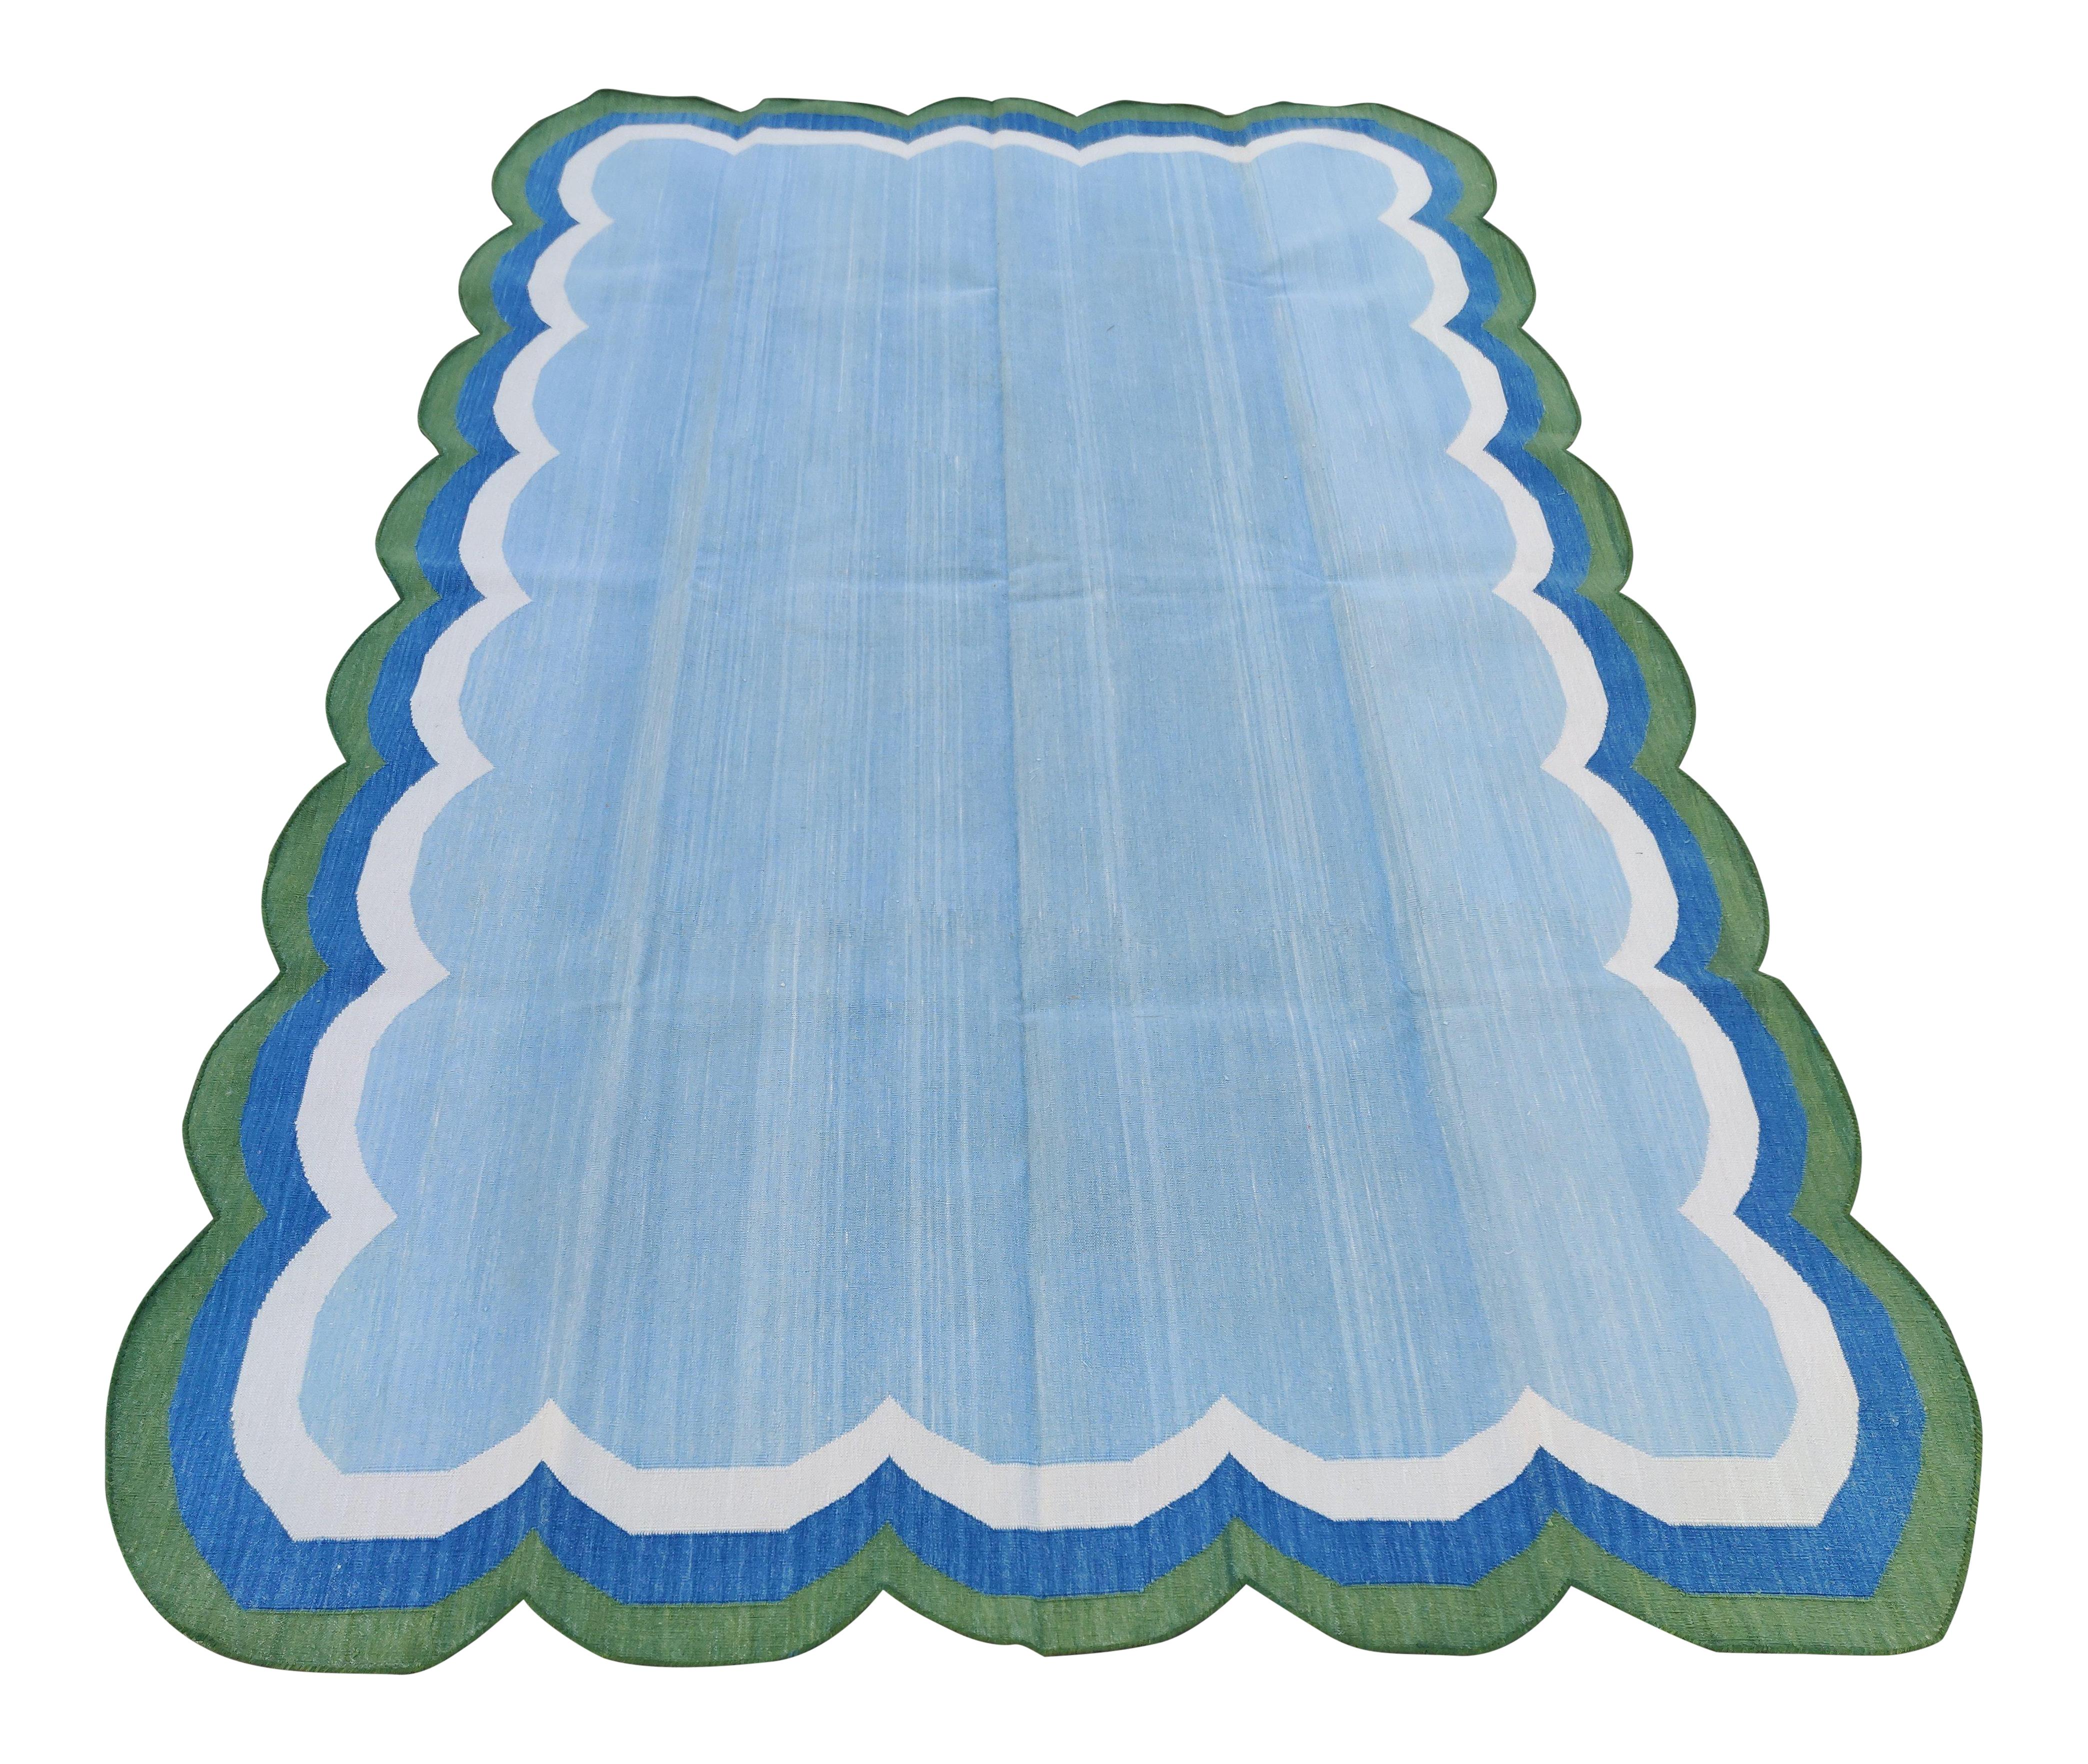 Baumwolle pflanzlich gefärbt blau und grün vierseitig mit Wellenschliff gestreiften indischen Dhurrie Teppich-5'x8' 

Diese speziellen flachgewebten Dhurries werden aus 15-fachem Garn aus 100% Baumwolle handgewebt. Aufgrund der speziellen